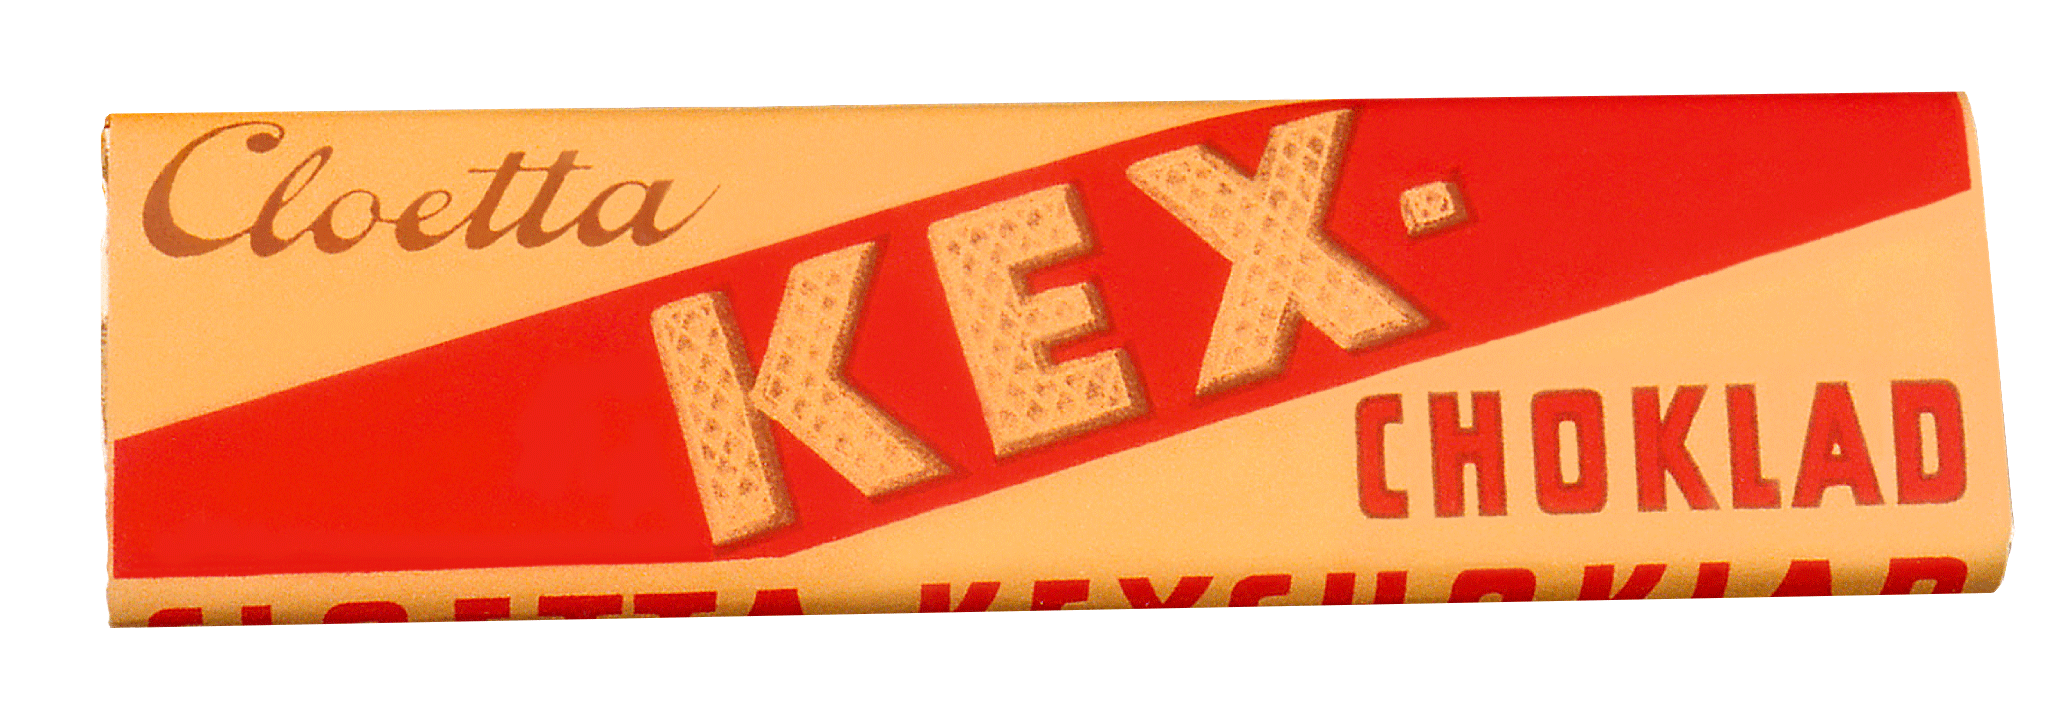 Kexchoklad 1938